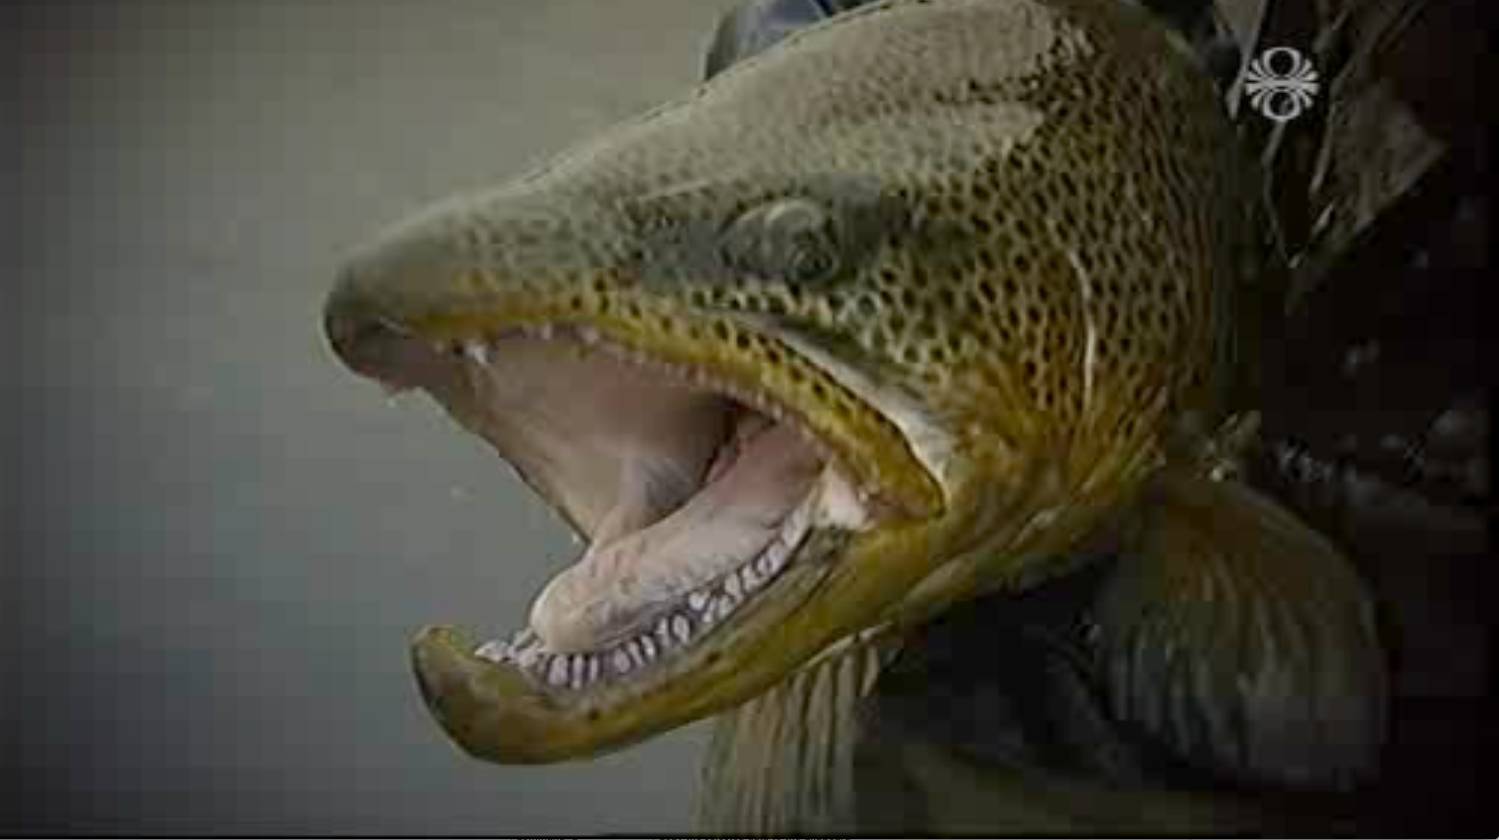 urridi-brown trout-ruv-laxfiskar.is